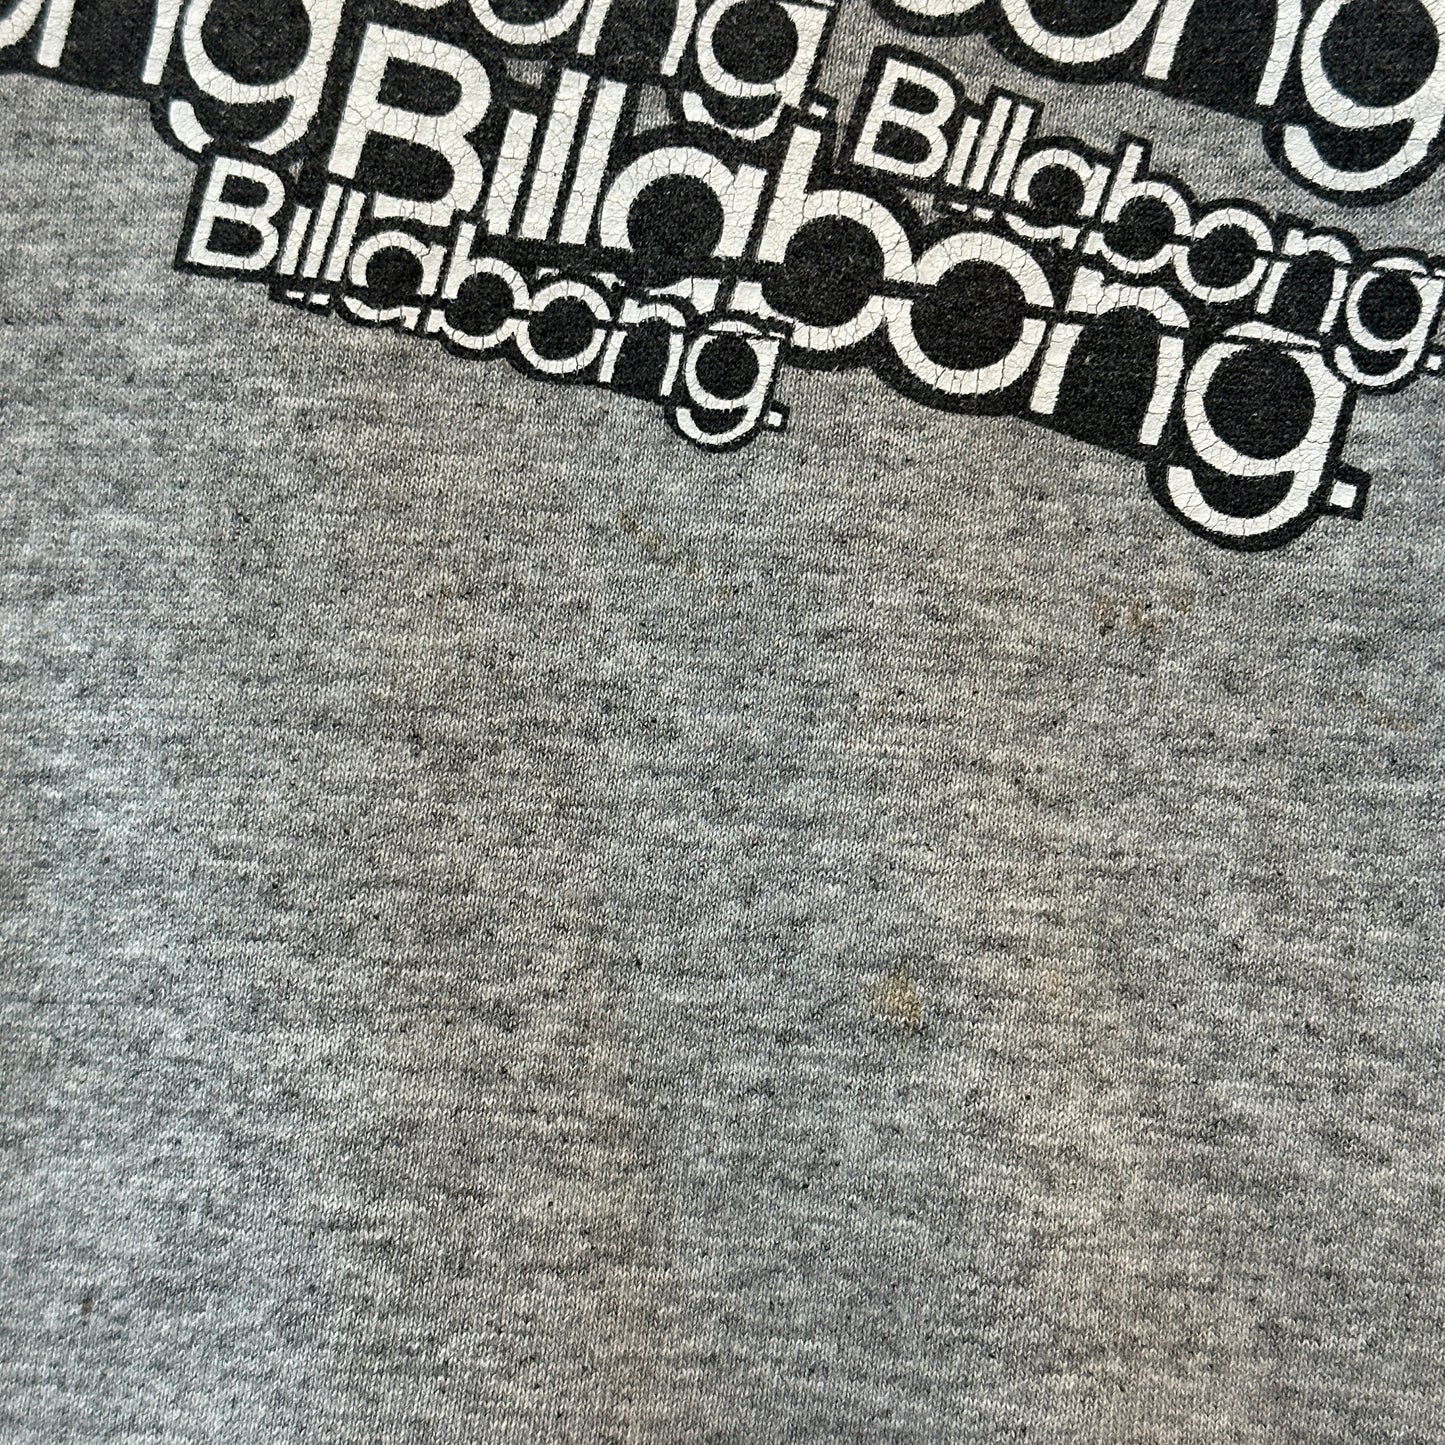 Billabong Surfboard 00's T-shirt